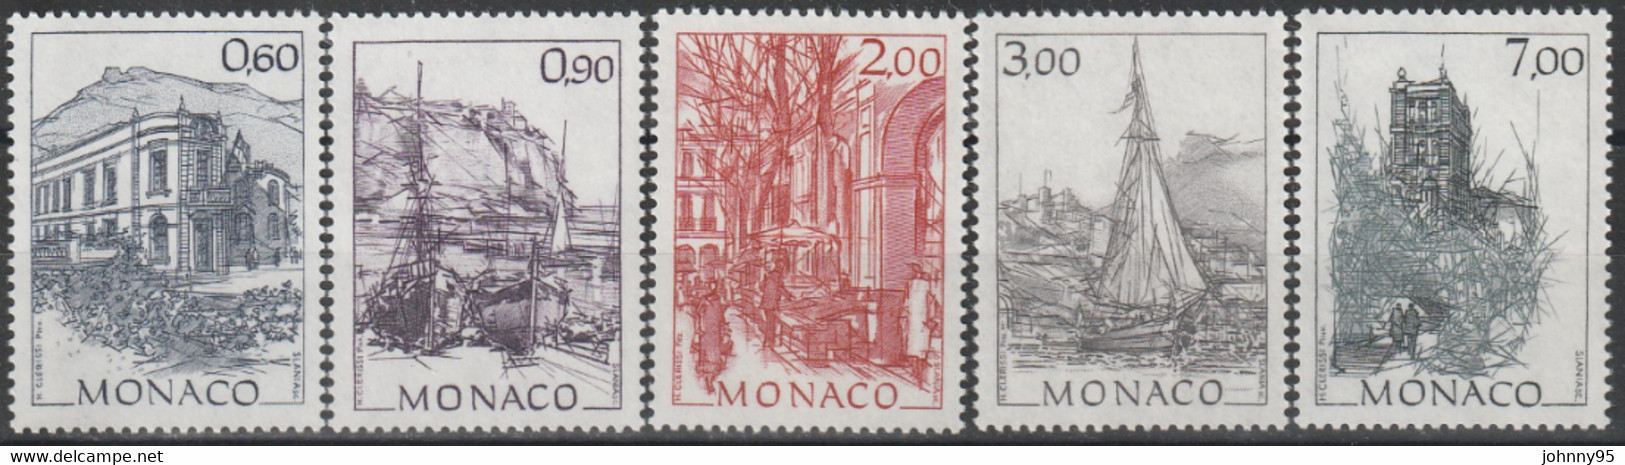 Année 1992 - N° 1834 à 1838 - Monaco D'autrefois : Oeuvres Du Peintre Hubert Clerissi - Série 5 Valeurs - Unused Stamps